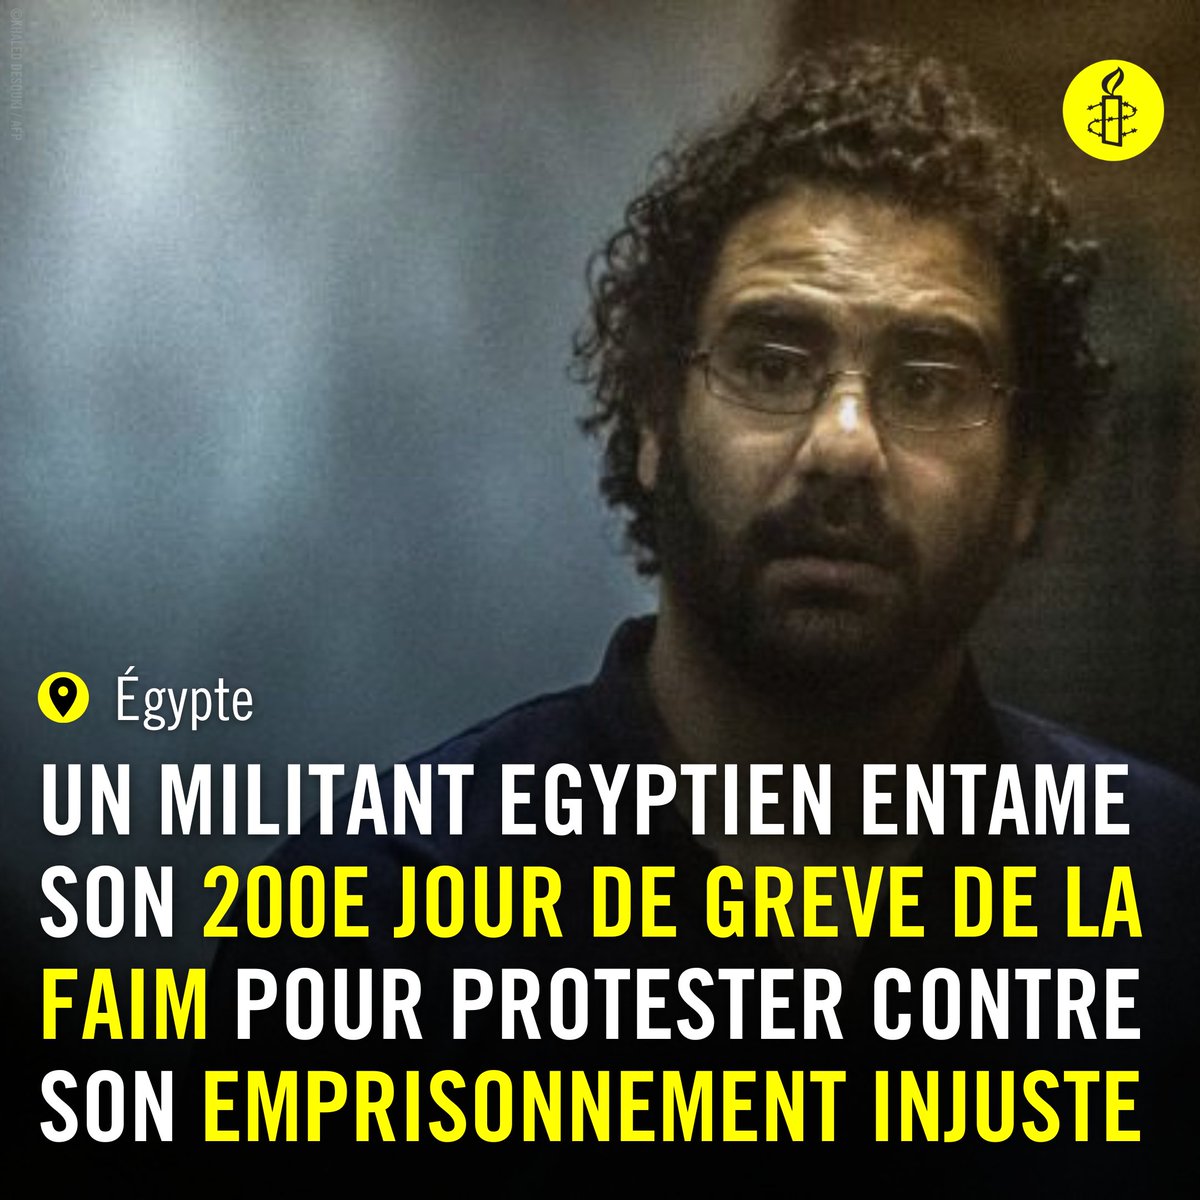 Le militant égyptien Alaa Abdel Fattah, est en grève de la faim depuis le 2 avril pour protester contre son emprisonnement injuste et ses dures conditions de détention, ainsi que contre le refus des visites.

#FreeAlaaAbdelFattah